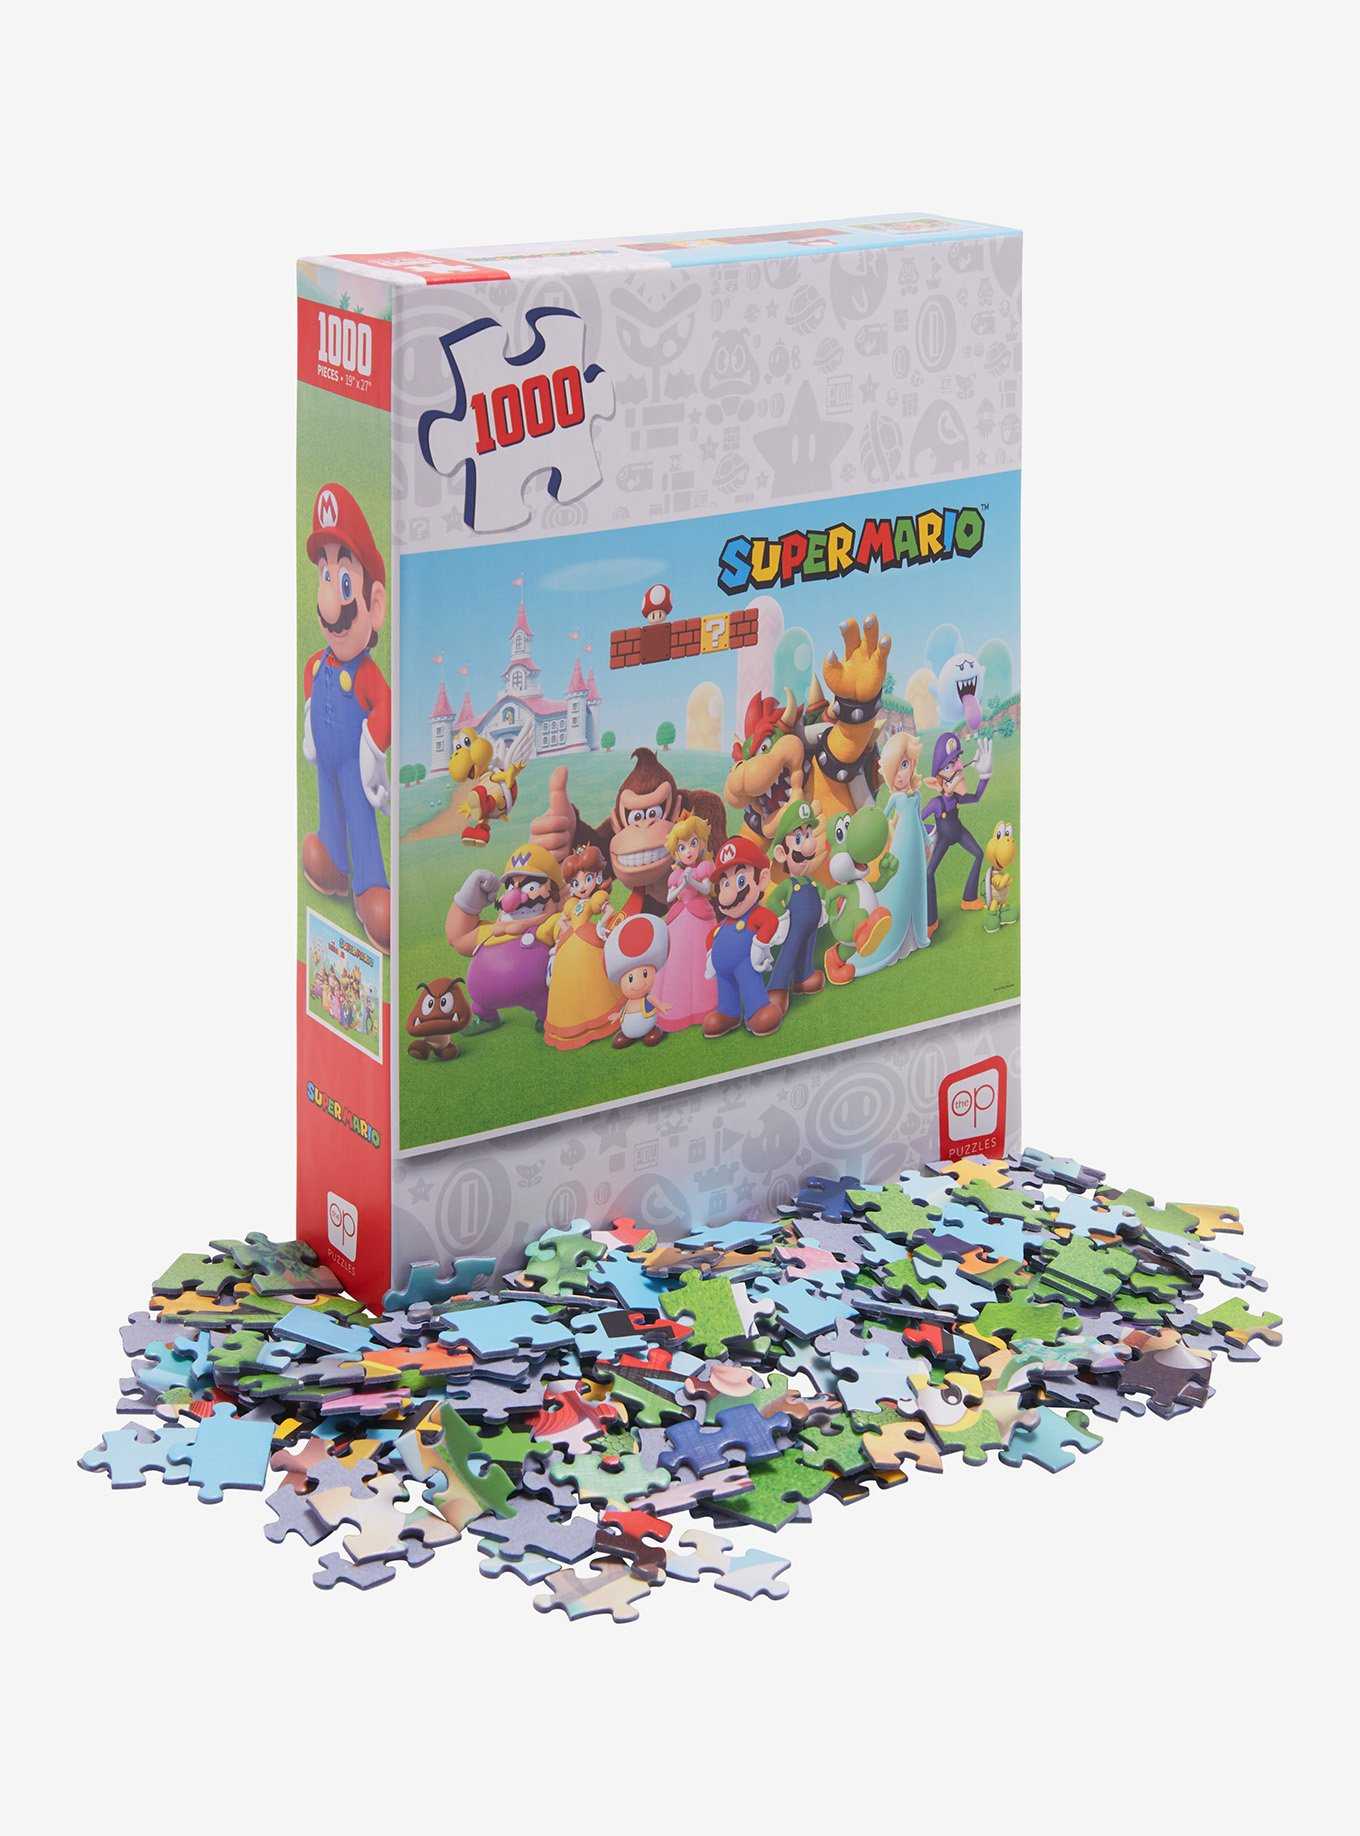 LEGO® Paint Party Puzzle (1,000 pieces) – AESOP'S FABLE